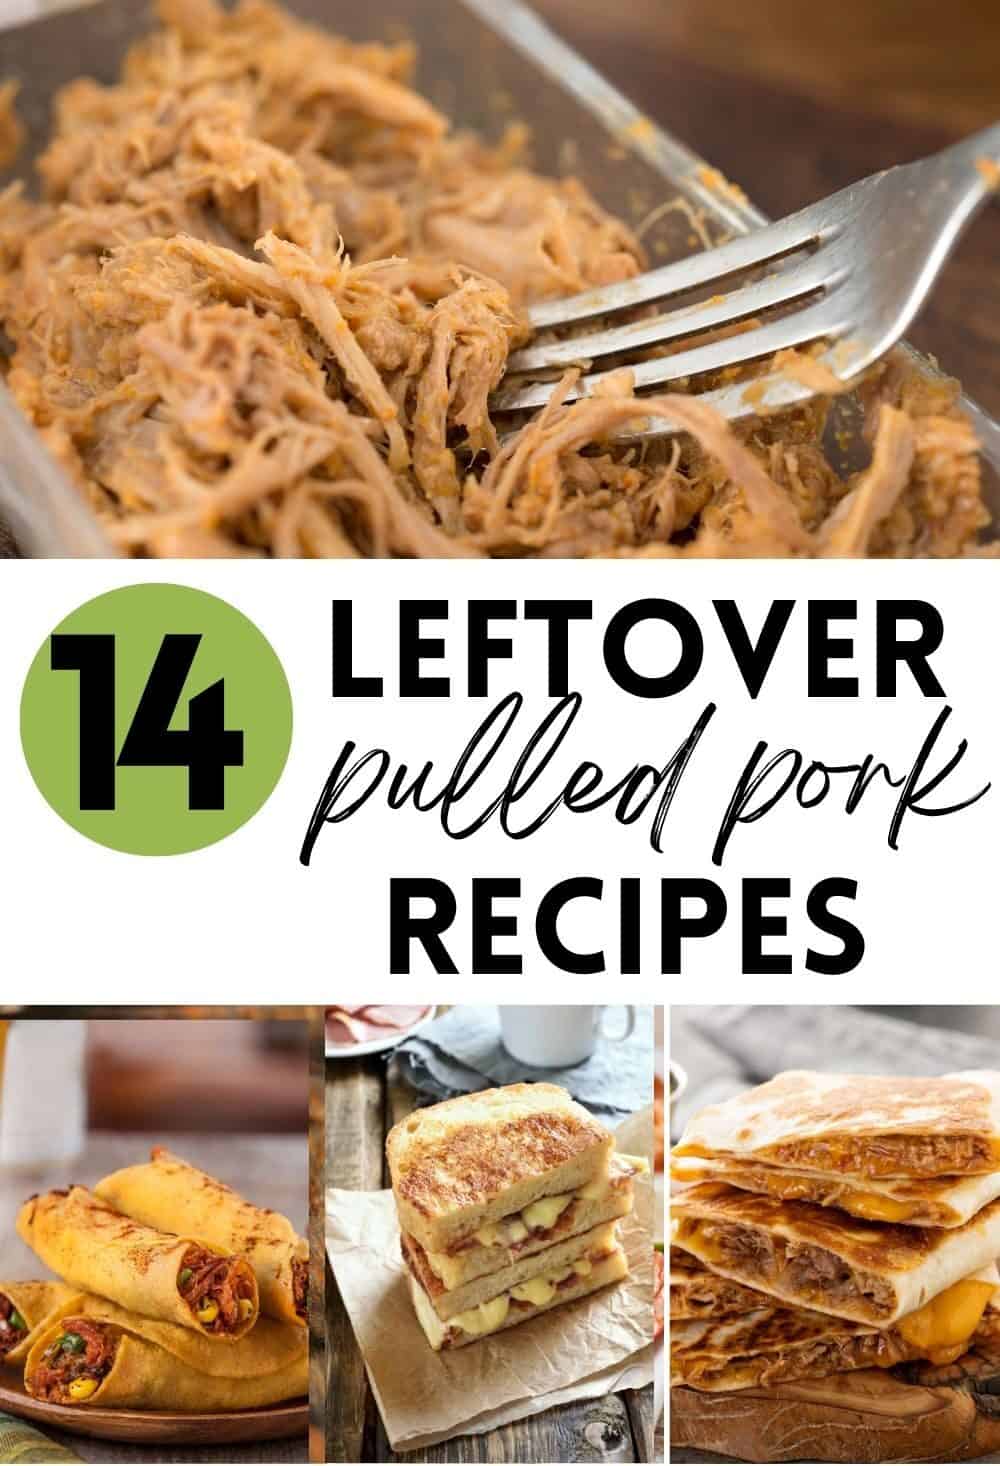 14 Leftover pulled pork recipes.